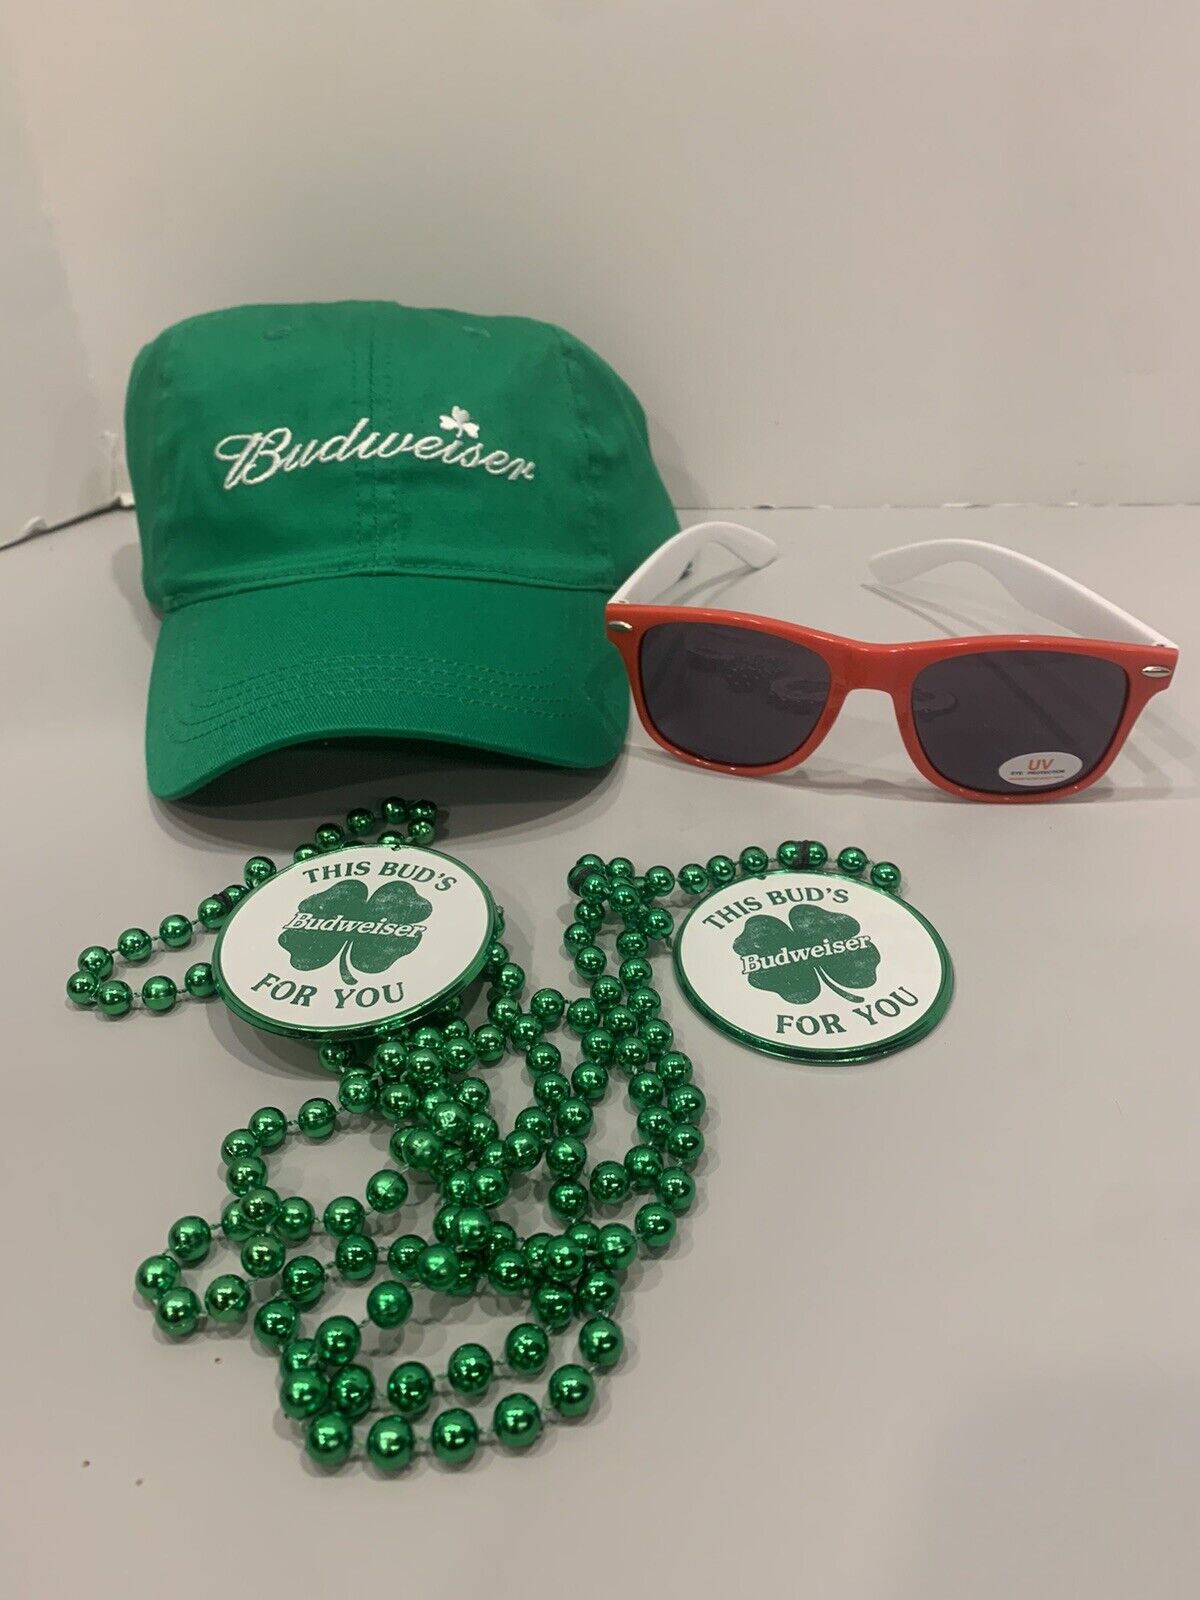 St. Patrick’s Day Budweiser starter kit